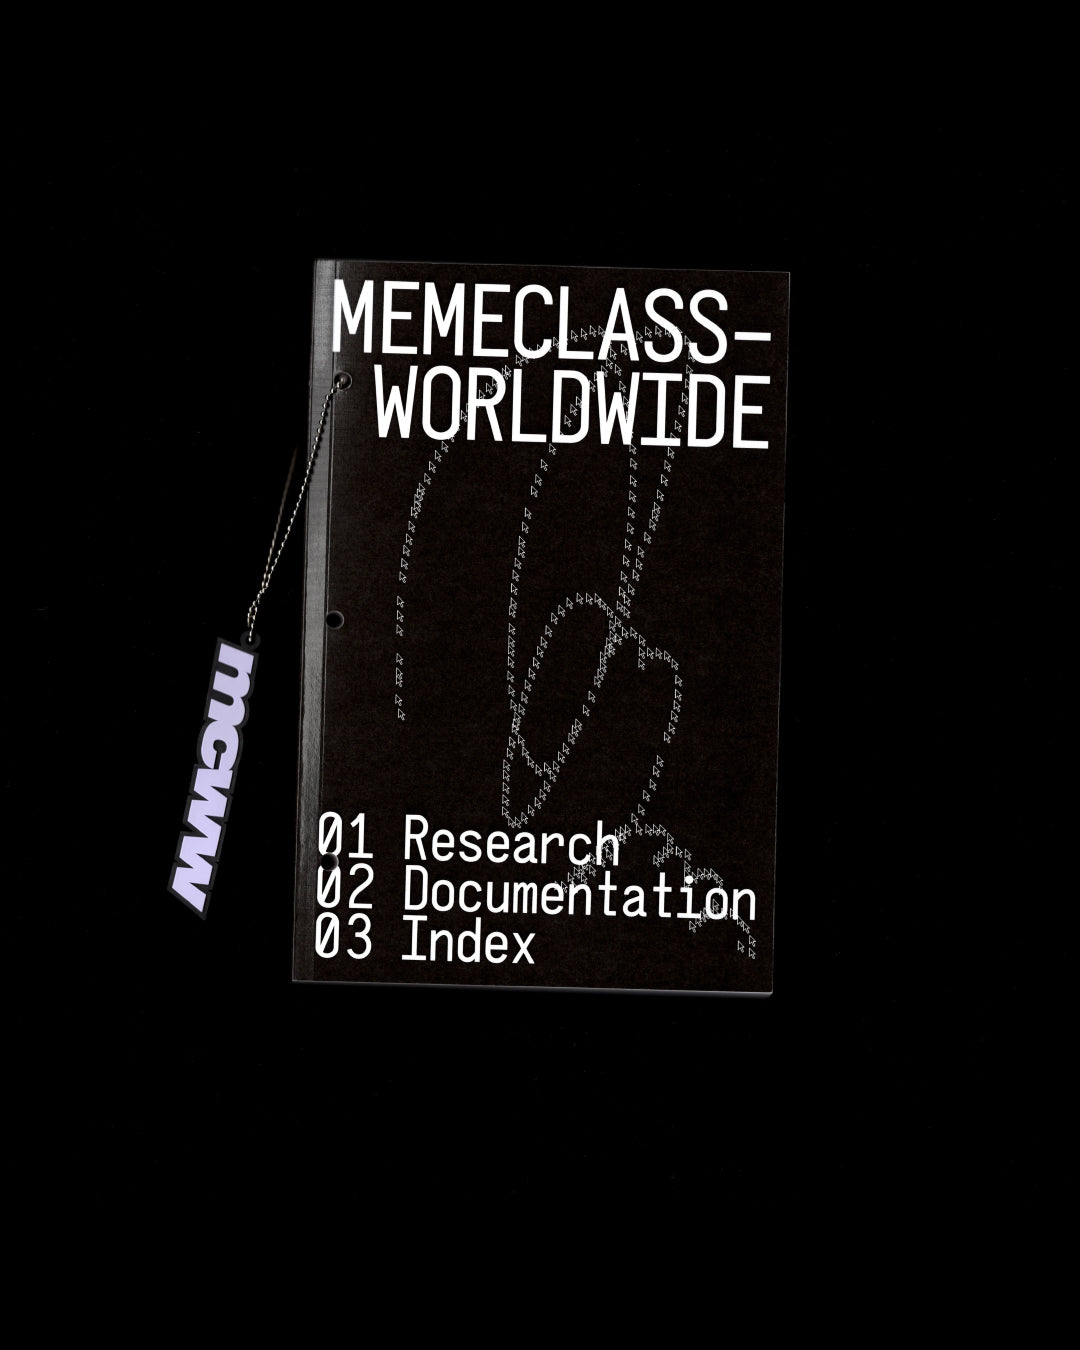 memeclassworldwide "memeclassworldwide - Research, Documentation, Index" Book